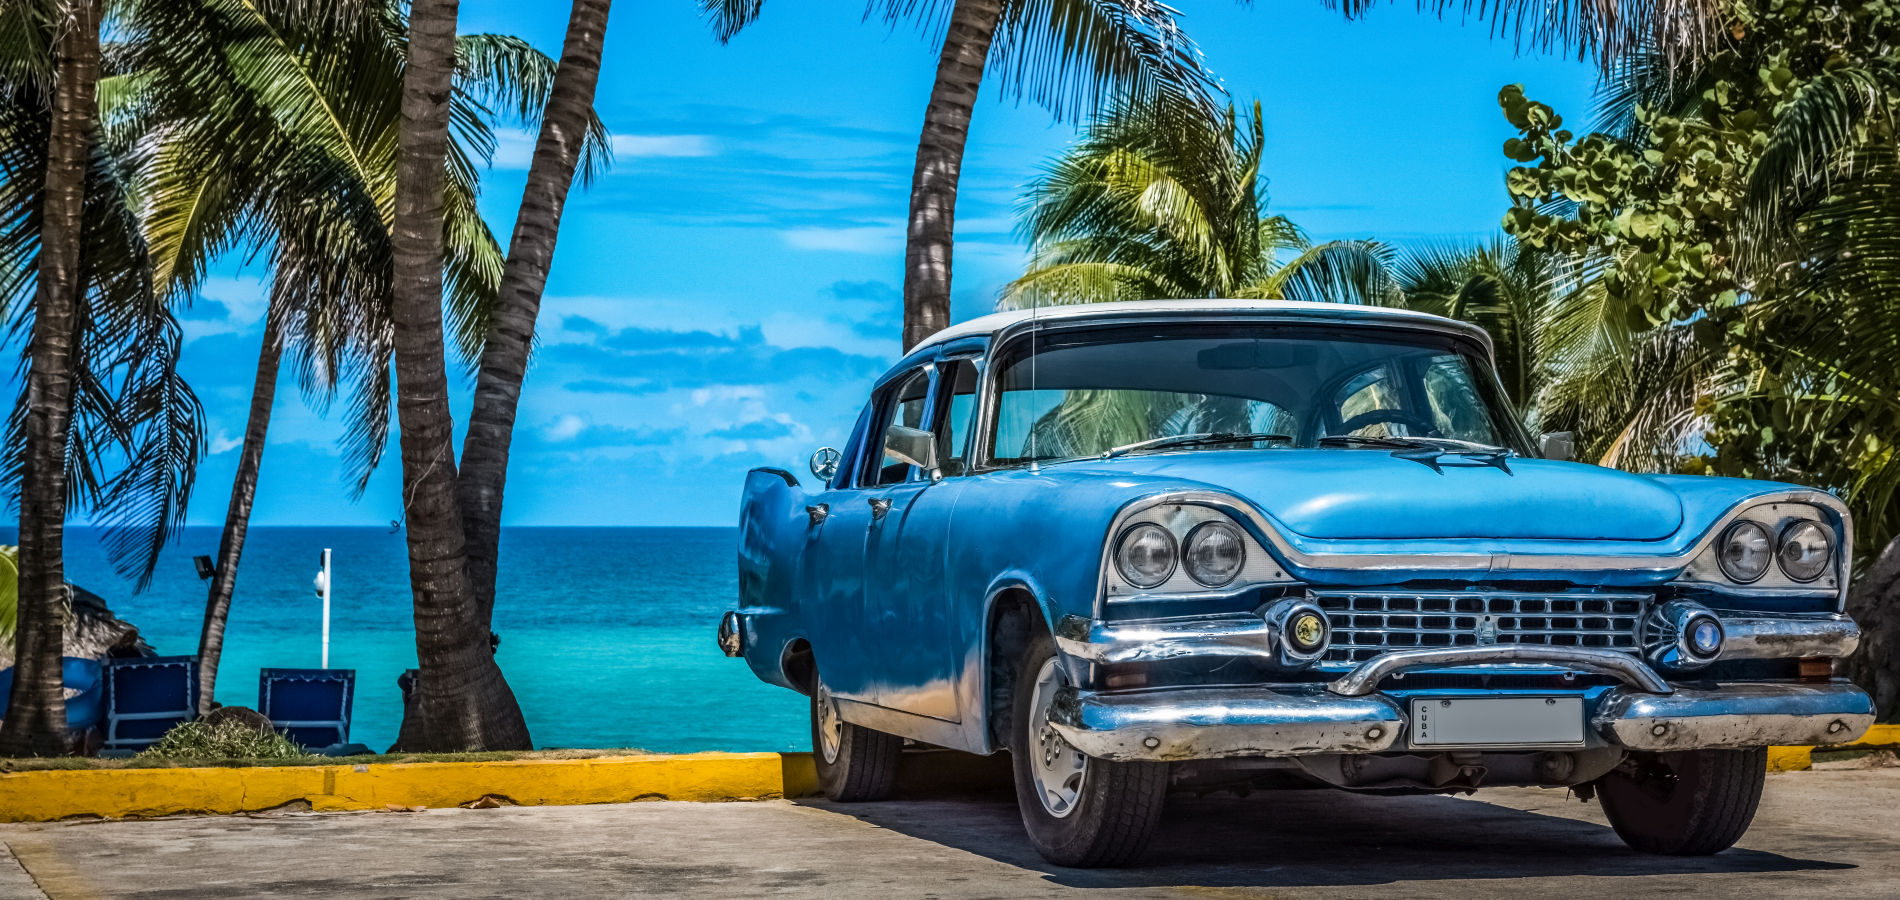 Kuba - Havanna és Varadero - OTP Travel Utazási Iroda